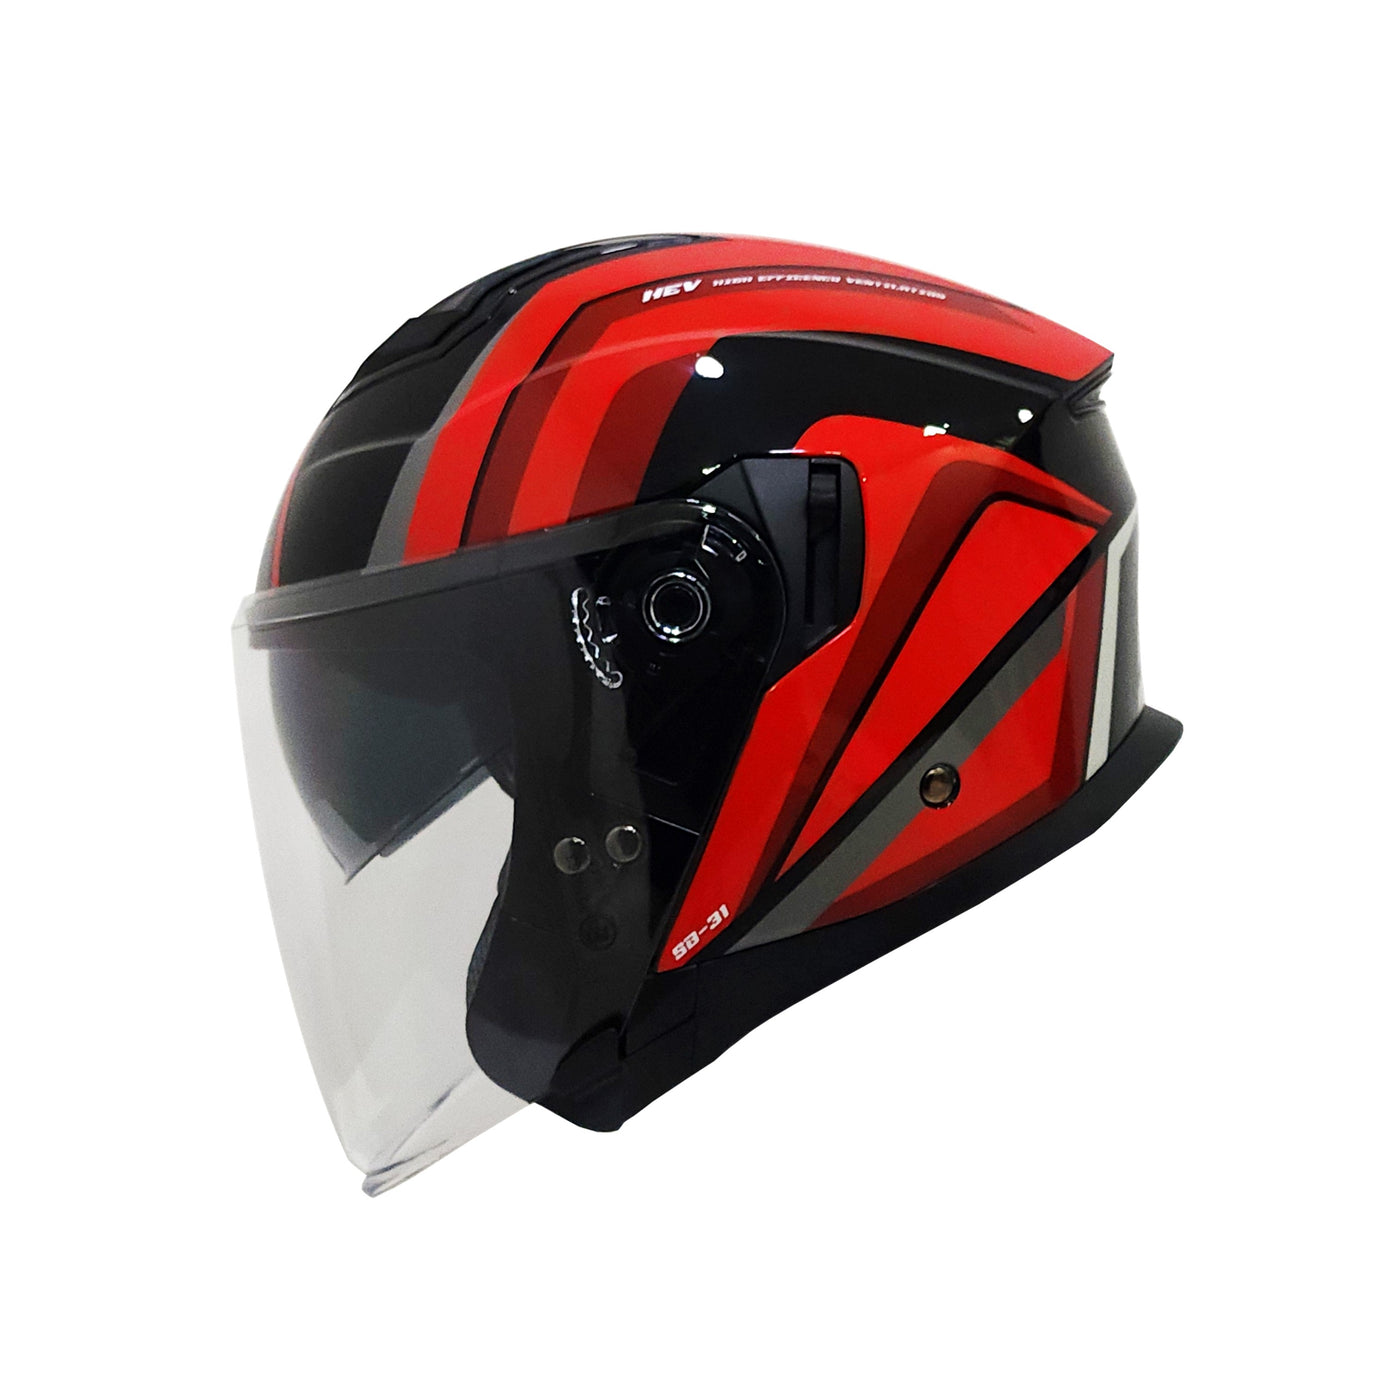 5M Boltz Graphic 1 Red Helmet